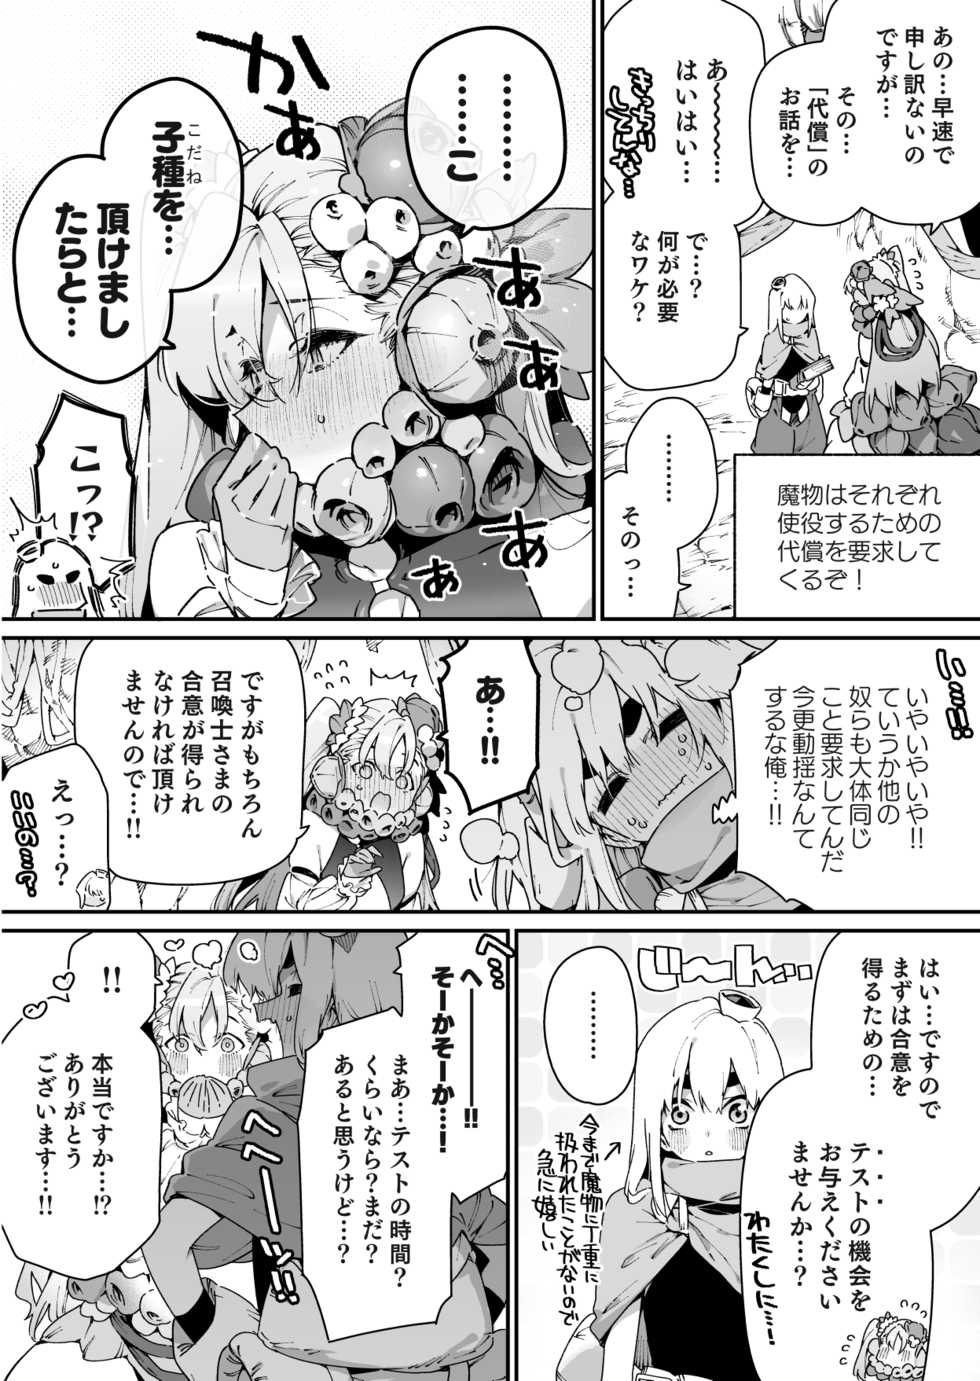 [Gyuutan Teishoku e no Koi] FANBOX - Page 3